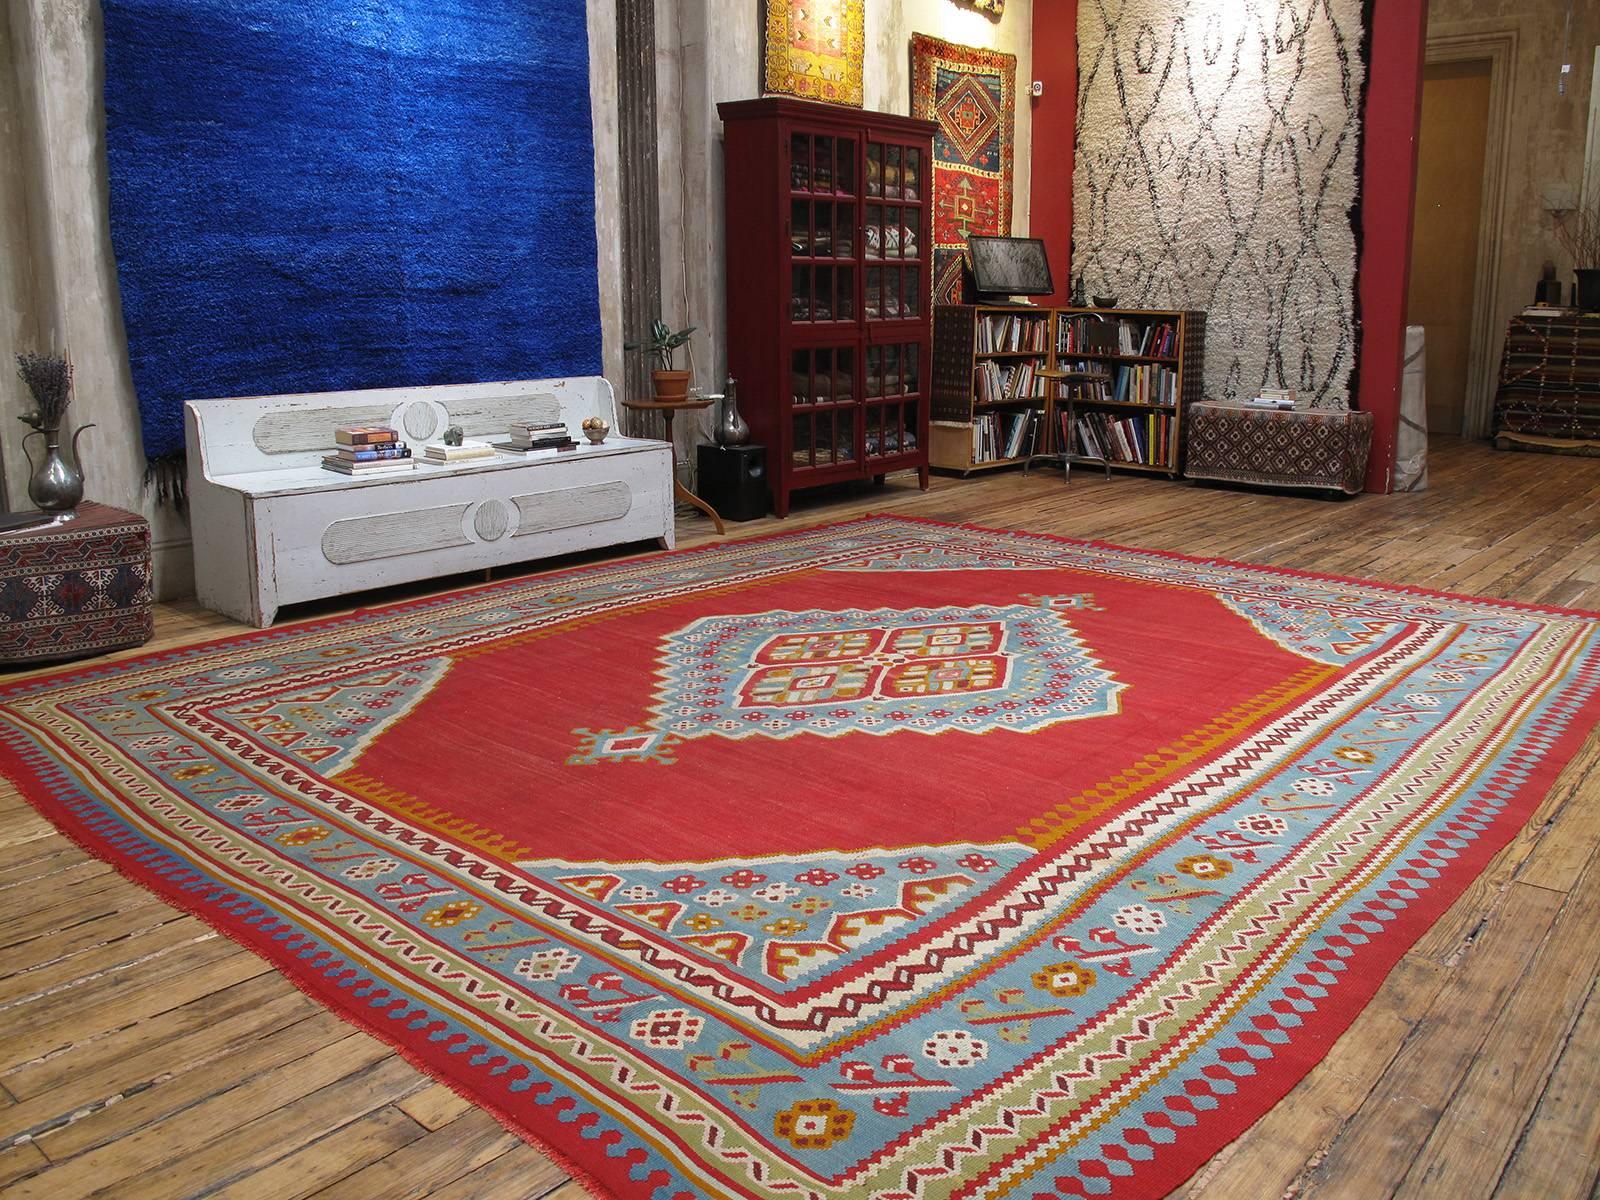 Großer antiker Oushak-Kilim-Teppich. Ein großformatiger antiker Kelimteppich, der in der Region Oushak in der Westtürkei gewebt wurde und das klassische zentrale Medaillonmuster und die Farbpalette aufweist. Diese Kelims waren zeitgleich mit den